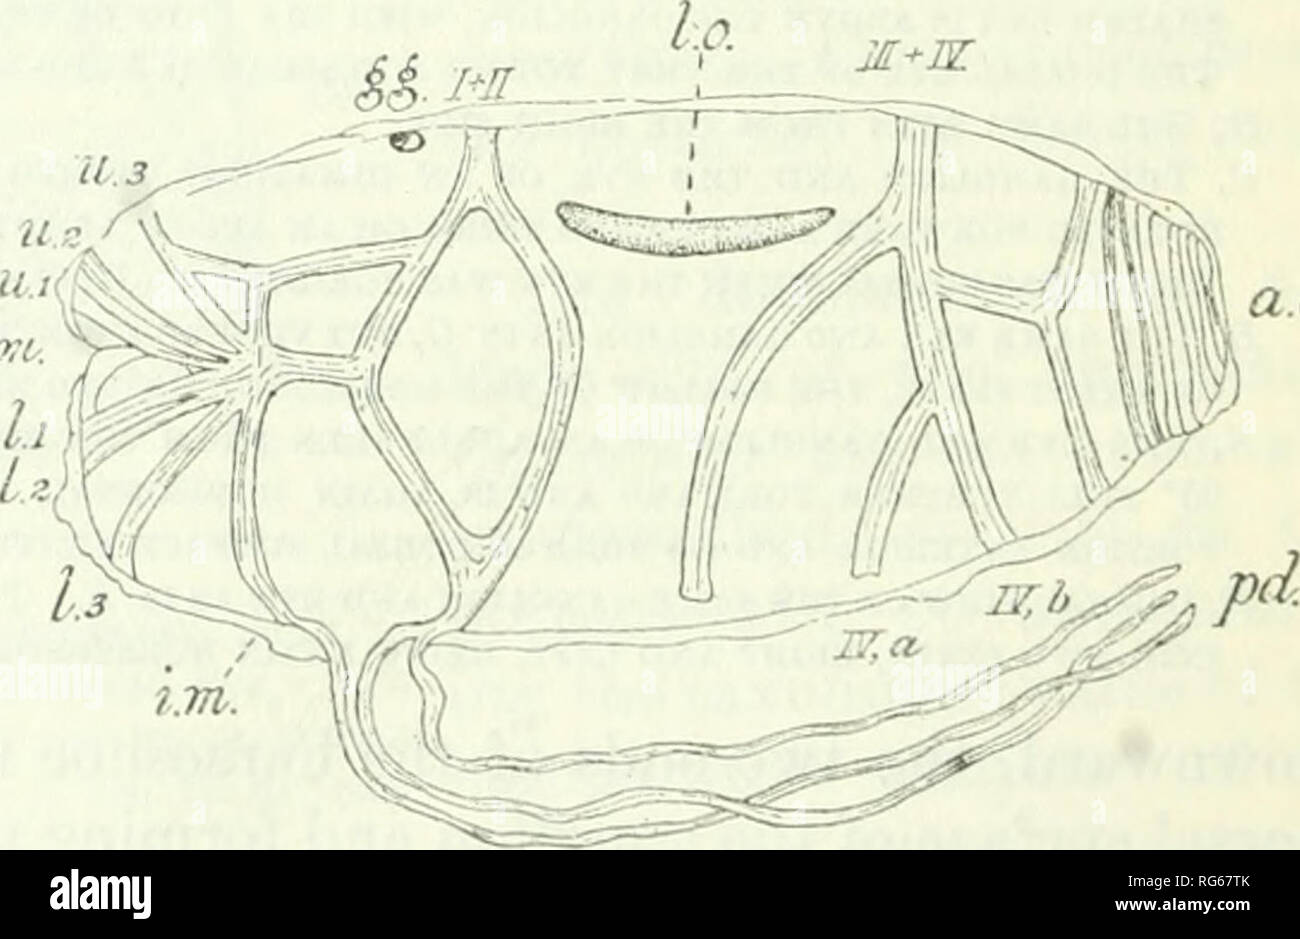 . Bulletin - United States National Museum. La science. e.a. Fig. 13.-Cyclosalpa pinnata, SUBSPE POLAE- CIES, forme solitaire, vue dorsale. À partir de 1912, un (SIGL). CYCLOSALPA PINNATA, sous-espèce POLAE (SIGL) (1912). Polae Cyclosalpa Sigl (1912). Cette sous-espèce est dit d'être Sigl dis- tinguished par deux caractéristiques : d'abord, dans l'isolement des individus, la fusion des muscles du corps VI sur la ligne médiane dorsale et leur poursuite de l'avant comme une bande musculaire médian atteignant presque le niveau des muscles du corps II (fig. 13) ; et, deuxièmement, le pédoncule long par laquelle l'aggre- gated zooïdes sont unis pour former le wh Banque D'Images